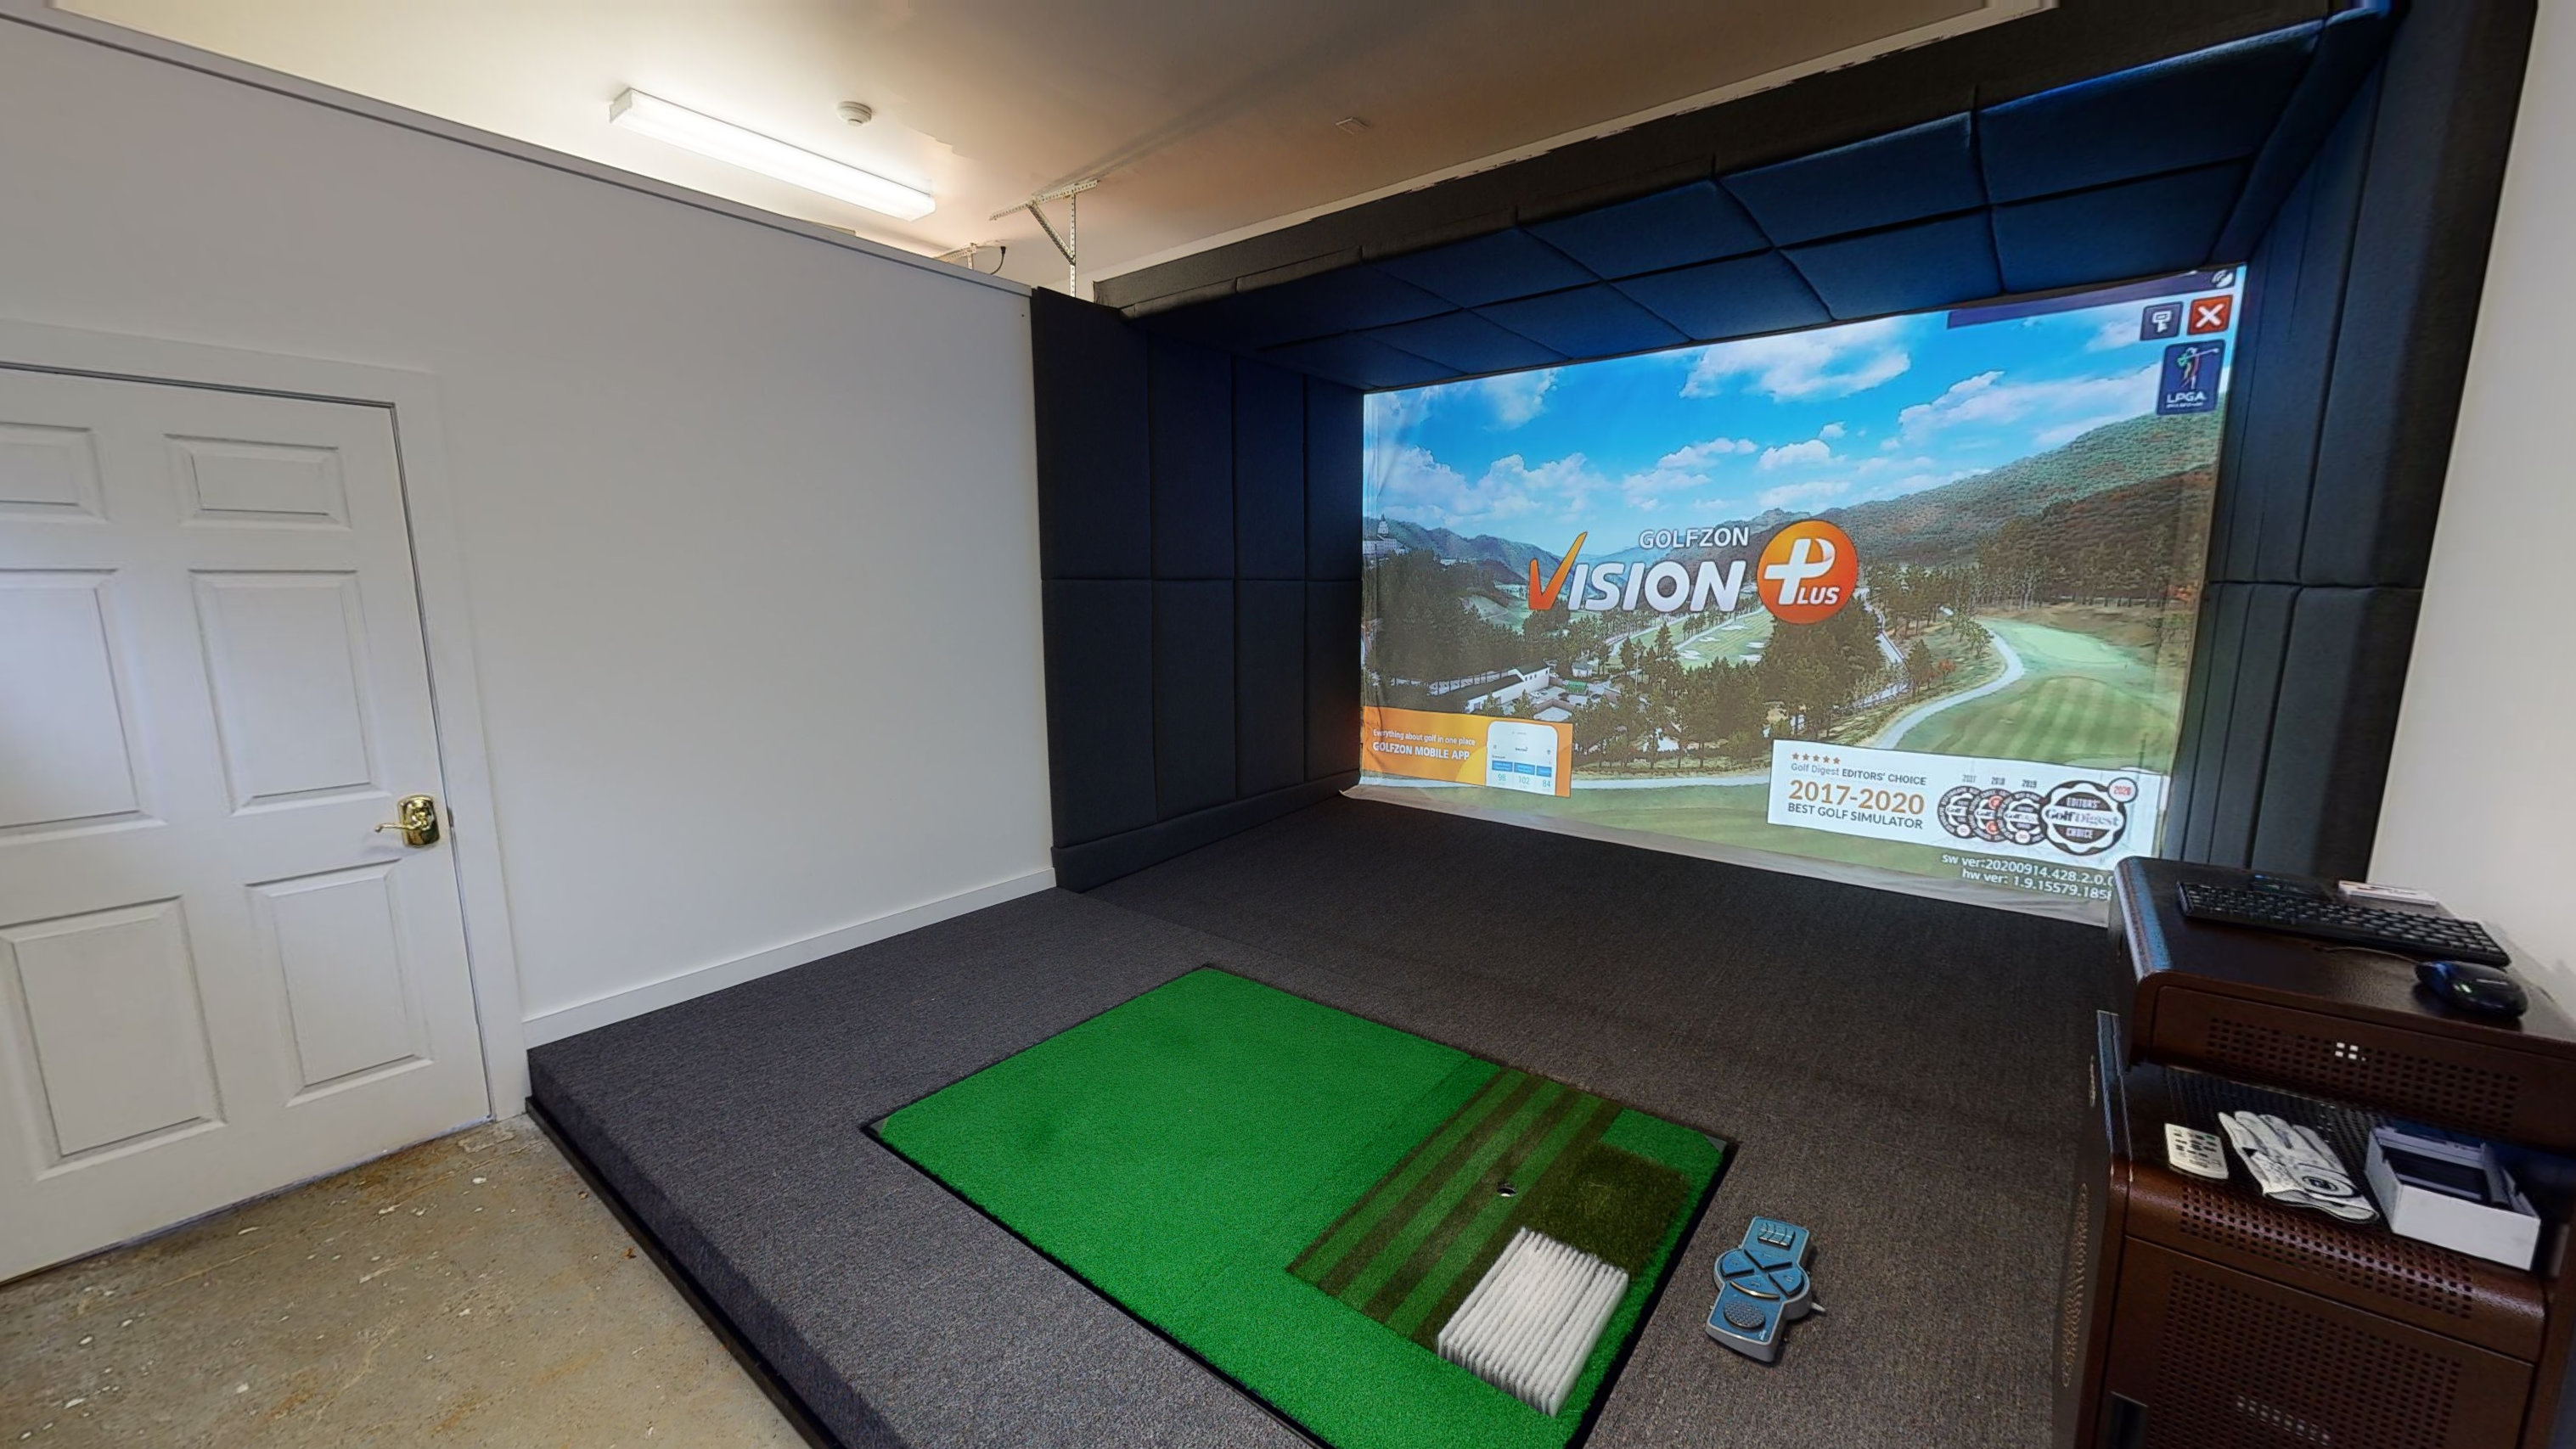 Golfzon simulator setup inside a home room for design ideas